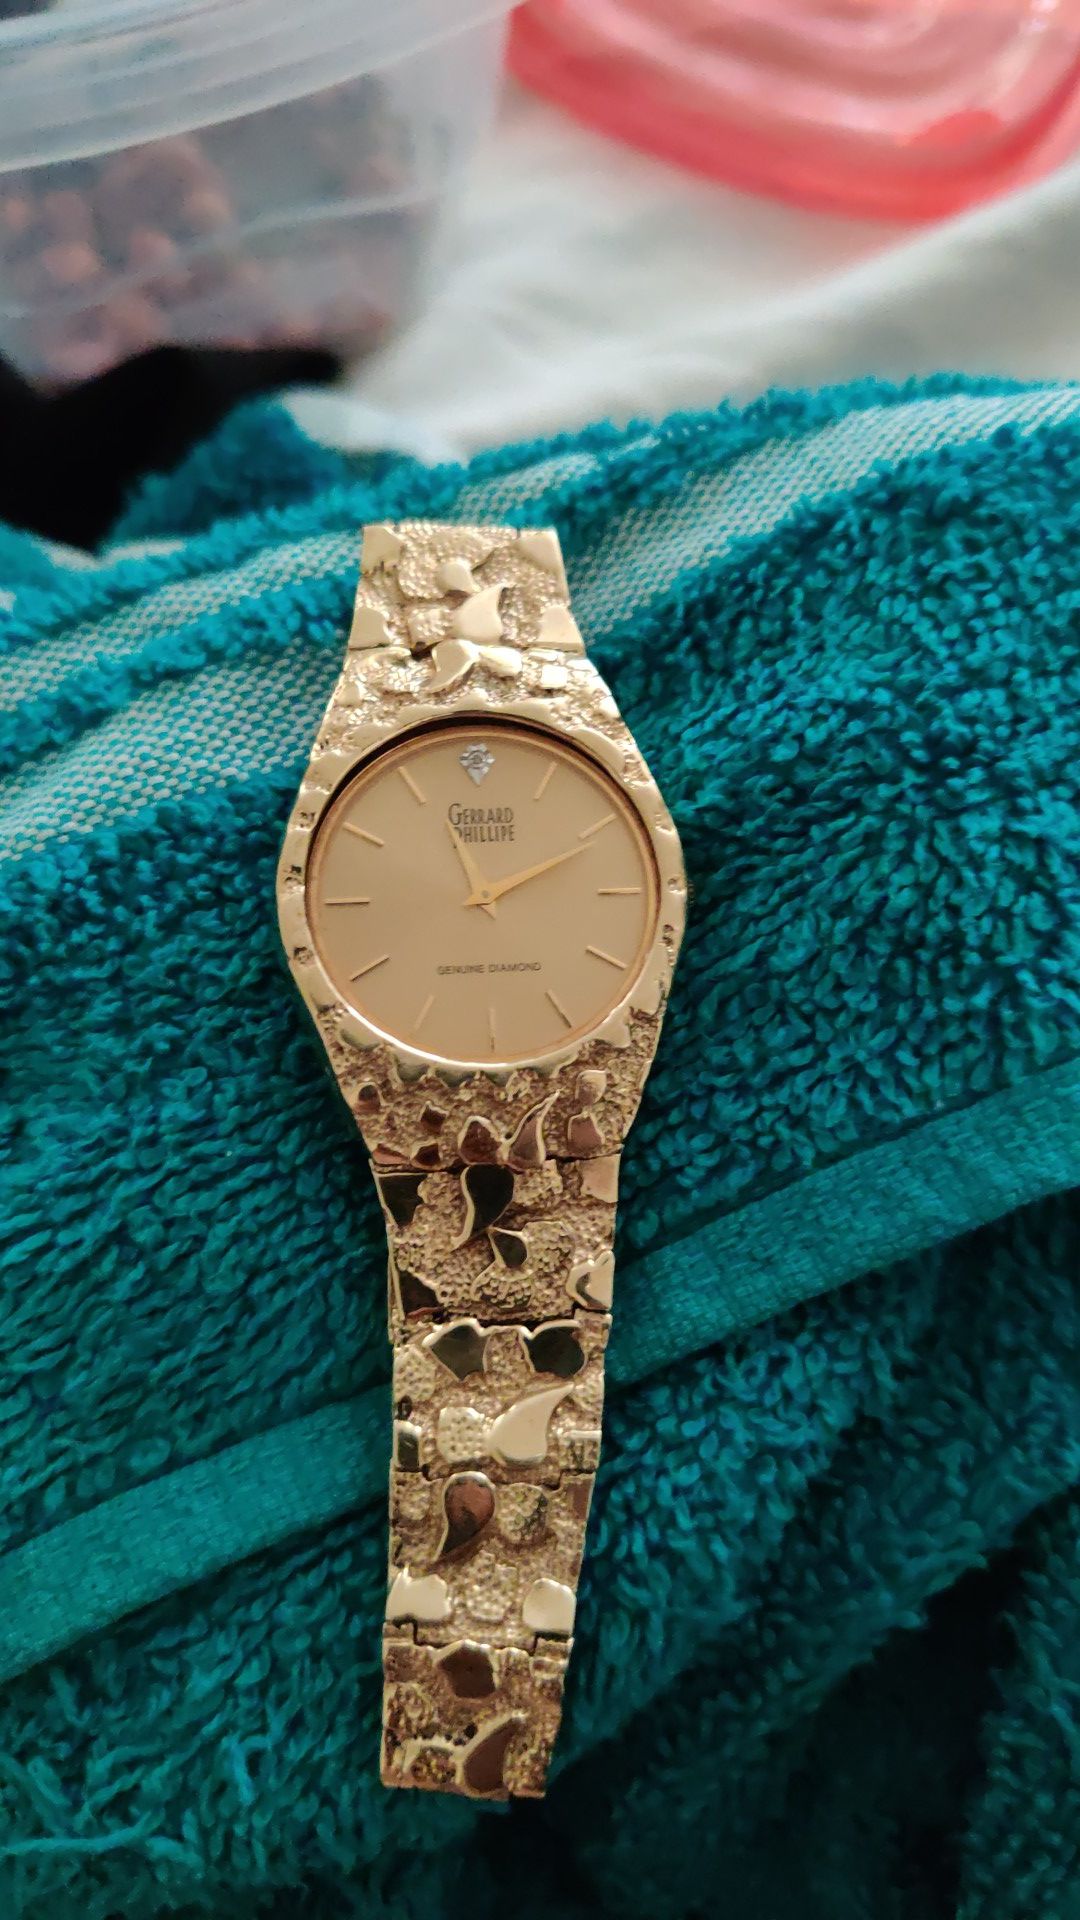 Gerrard Phillipe antique 10k gold watch w/ genuine diamond